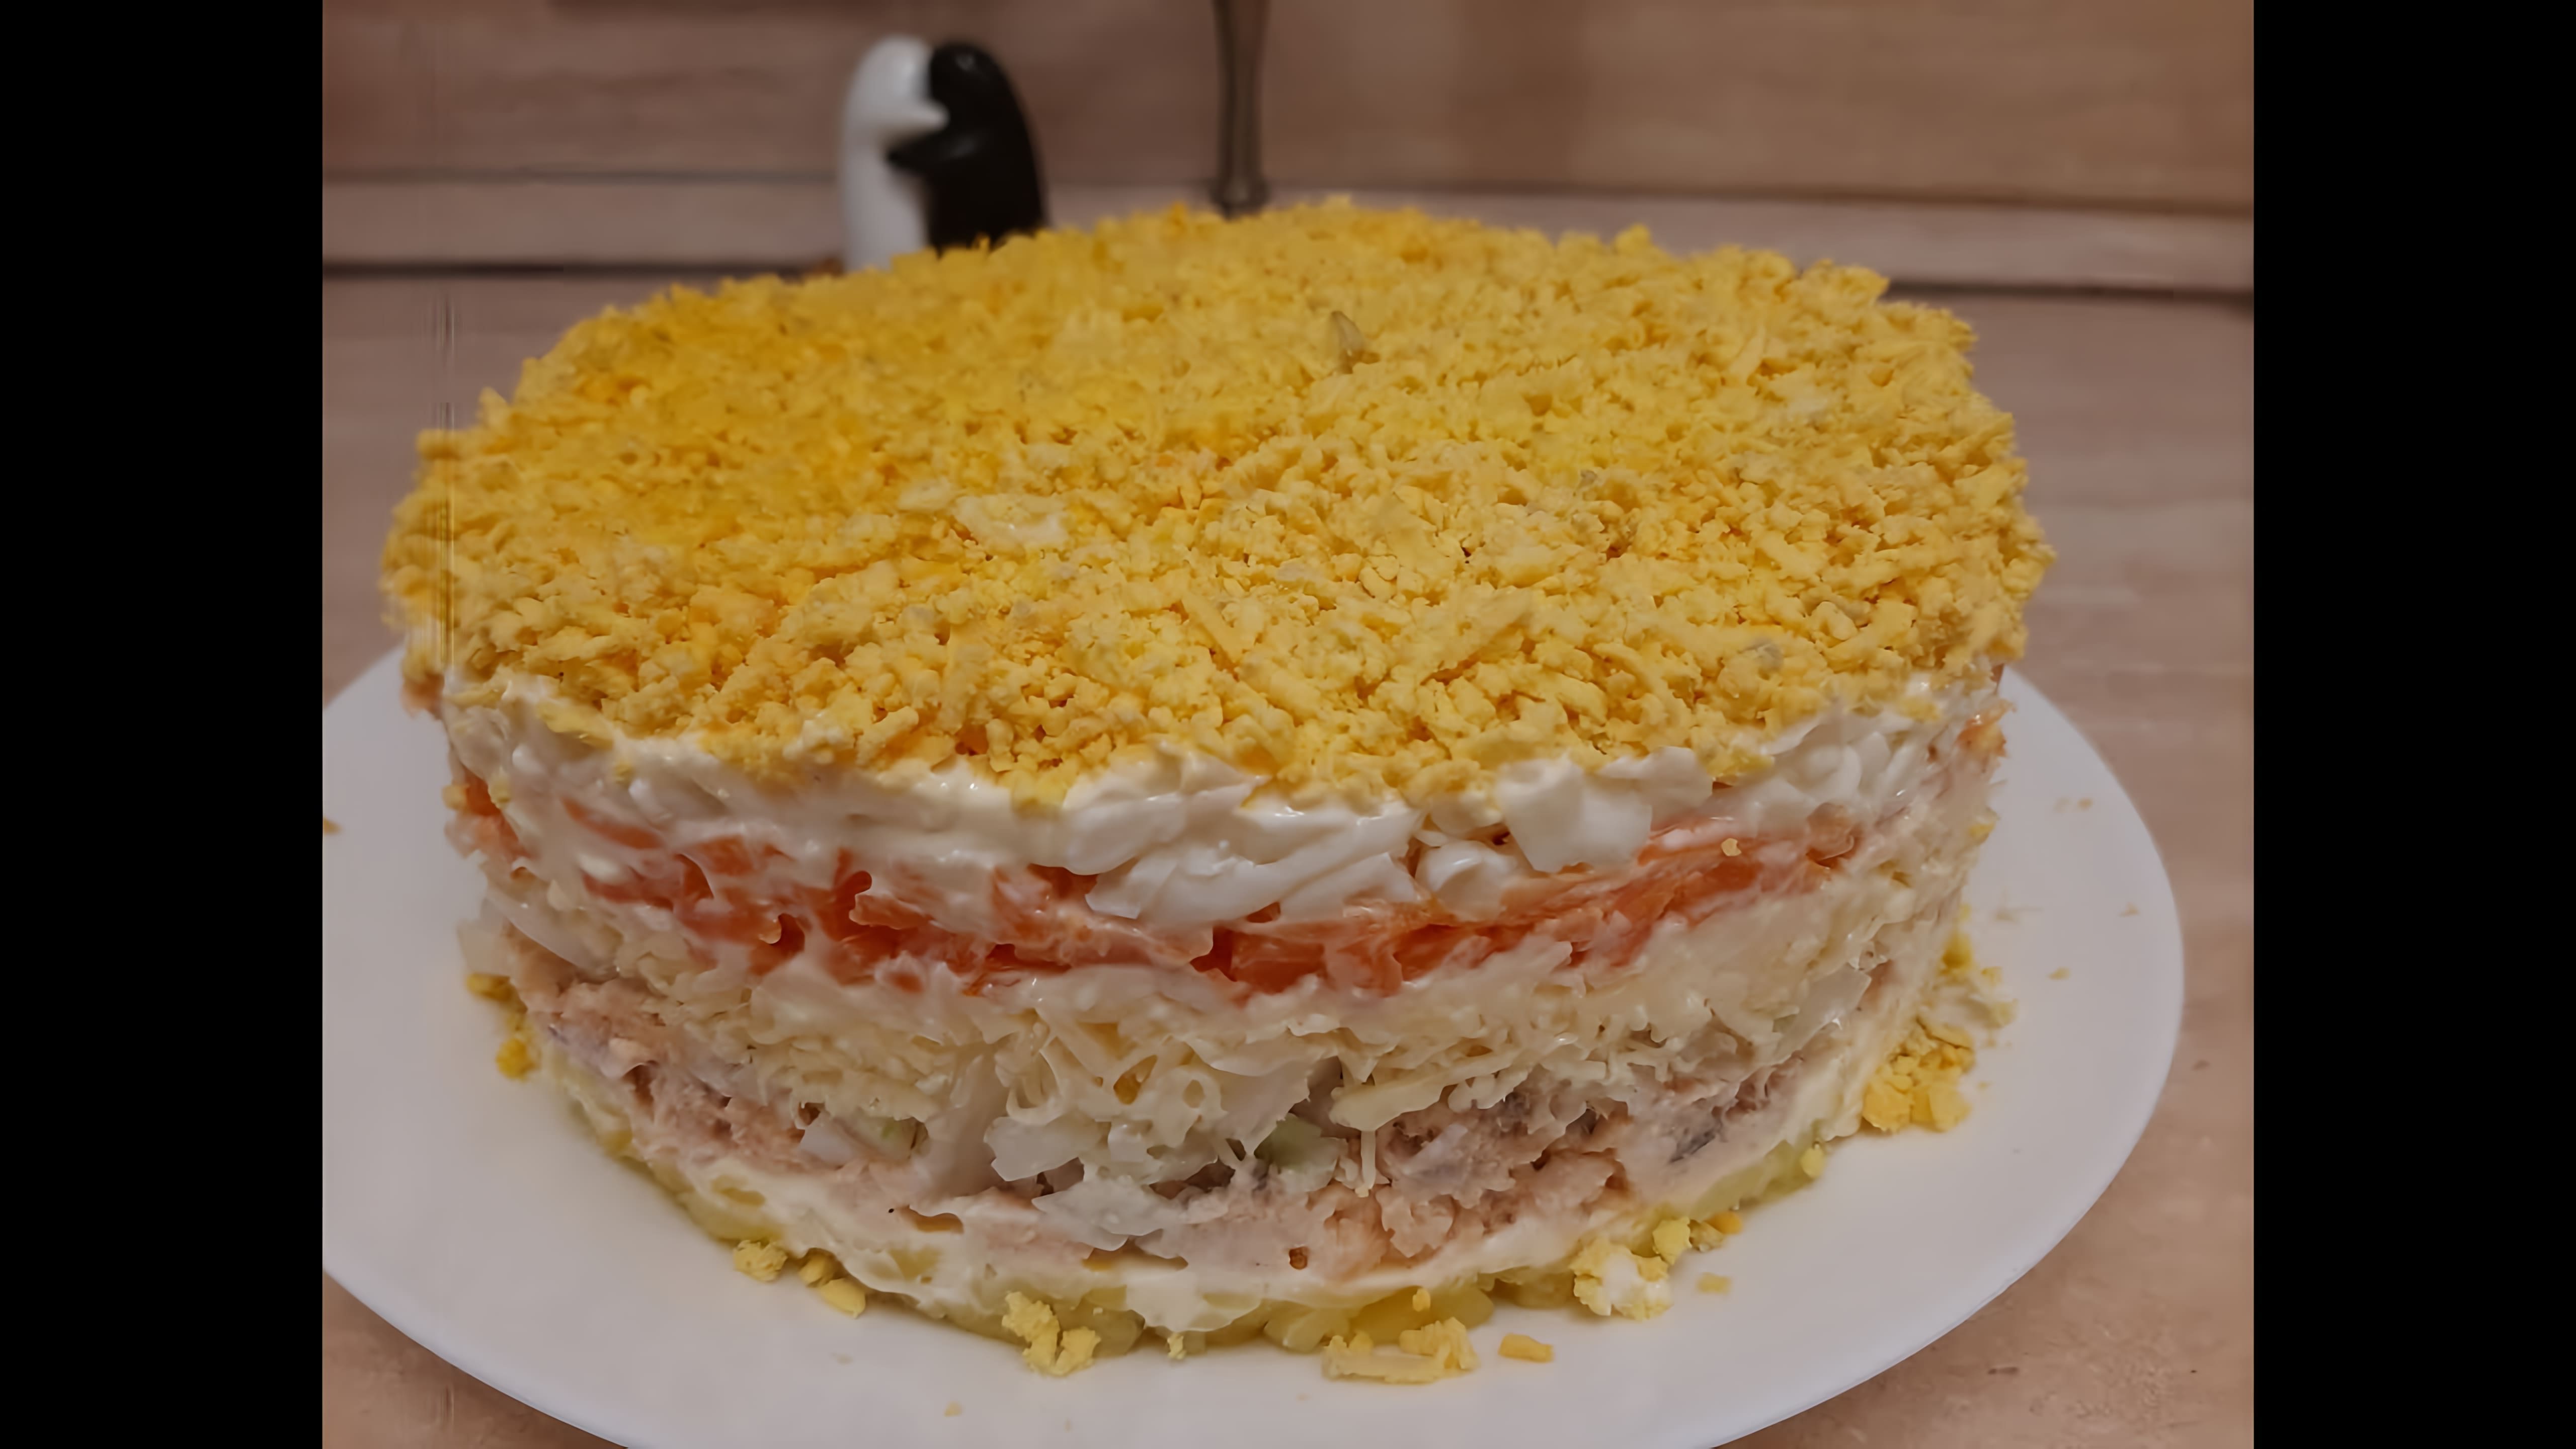 В этом видео демонстрируется рецепт приготовления салата "Мимоза" с консервированной горбушей и сыром